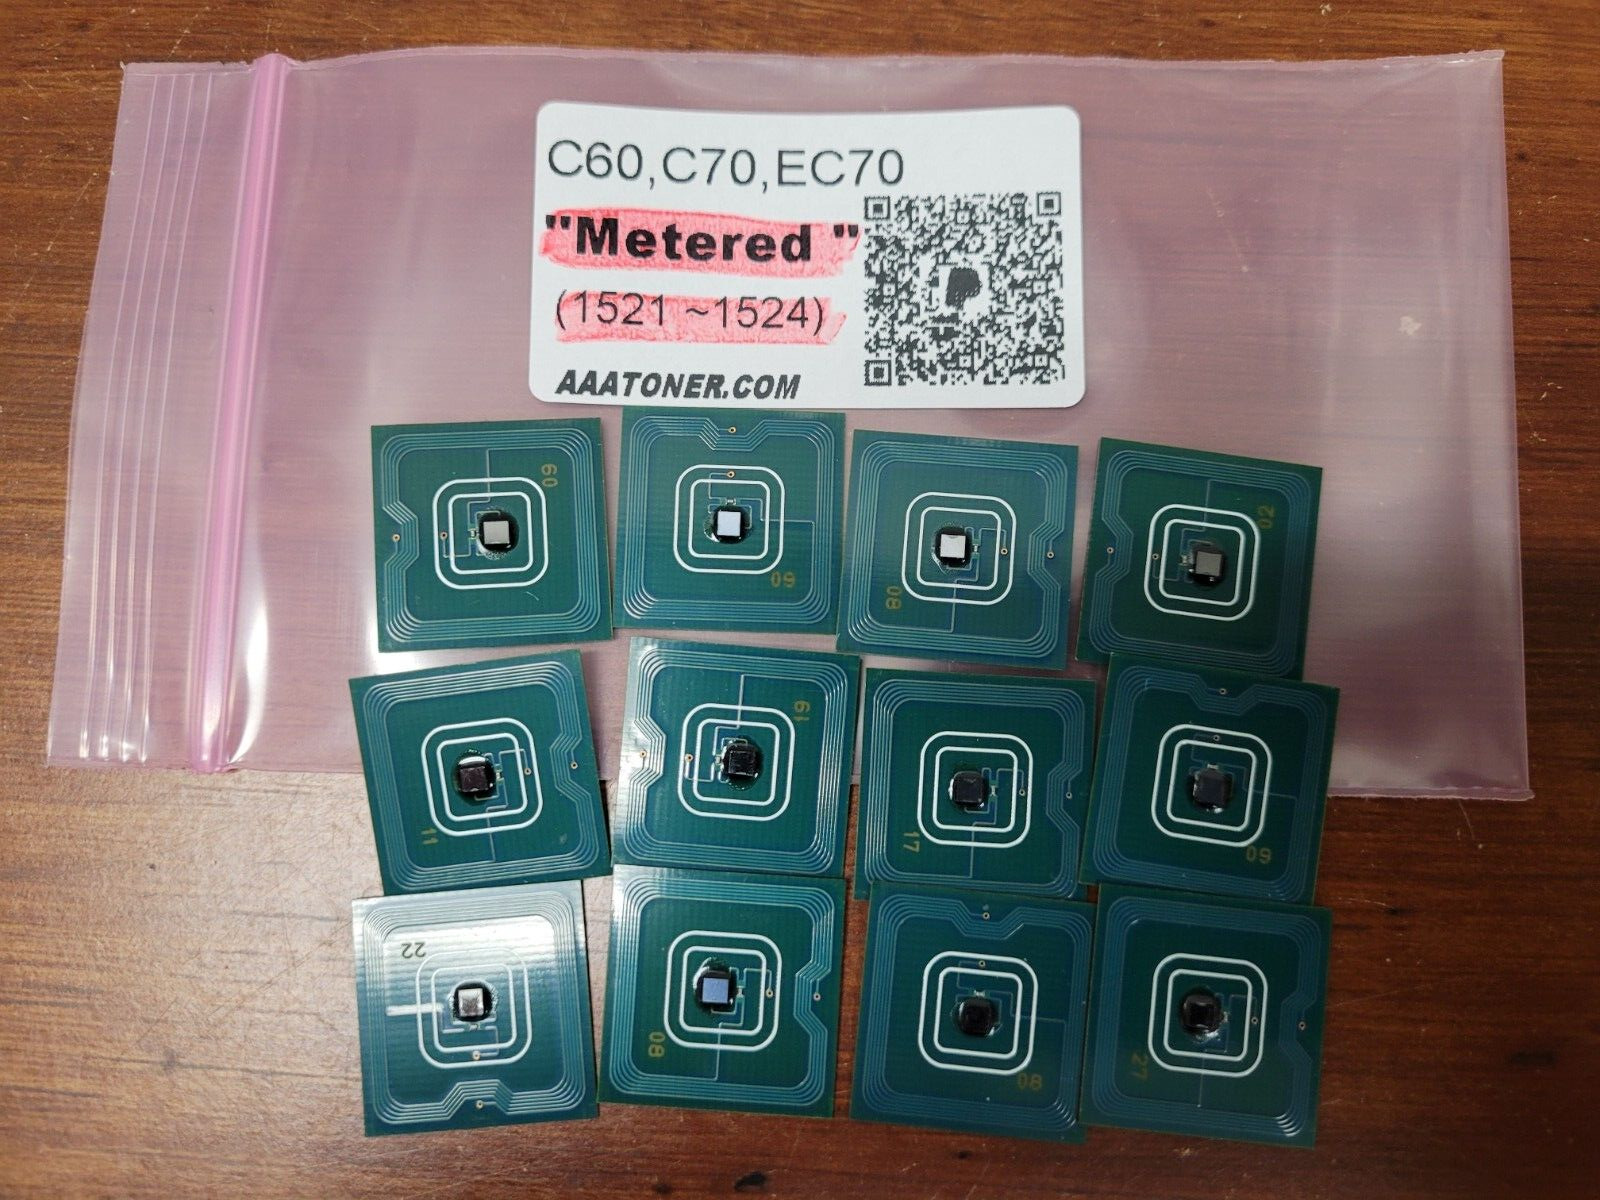 12 x Toner Chip (METERED) for  Xerox Color C60, C70, EC70 Digital Printer Refill